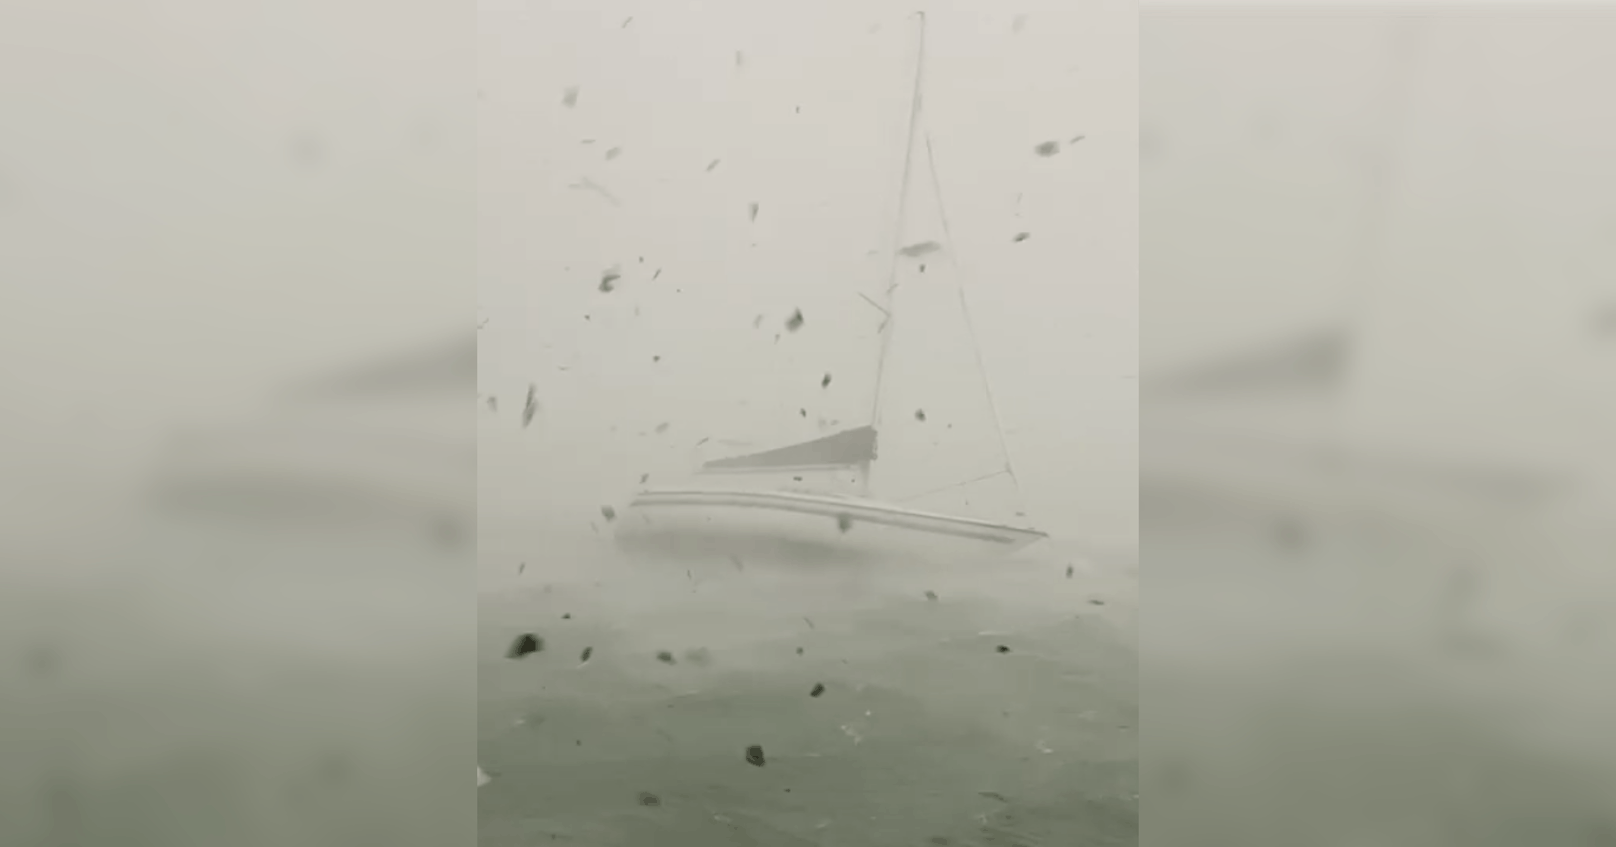 Ein Segelboot wurde vom Sturm beinahe versenkt